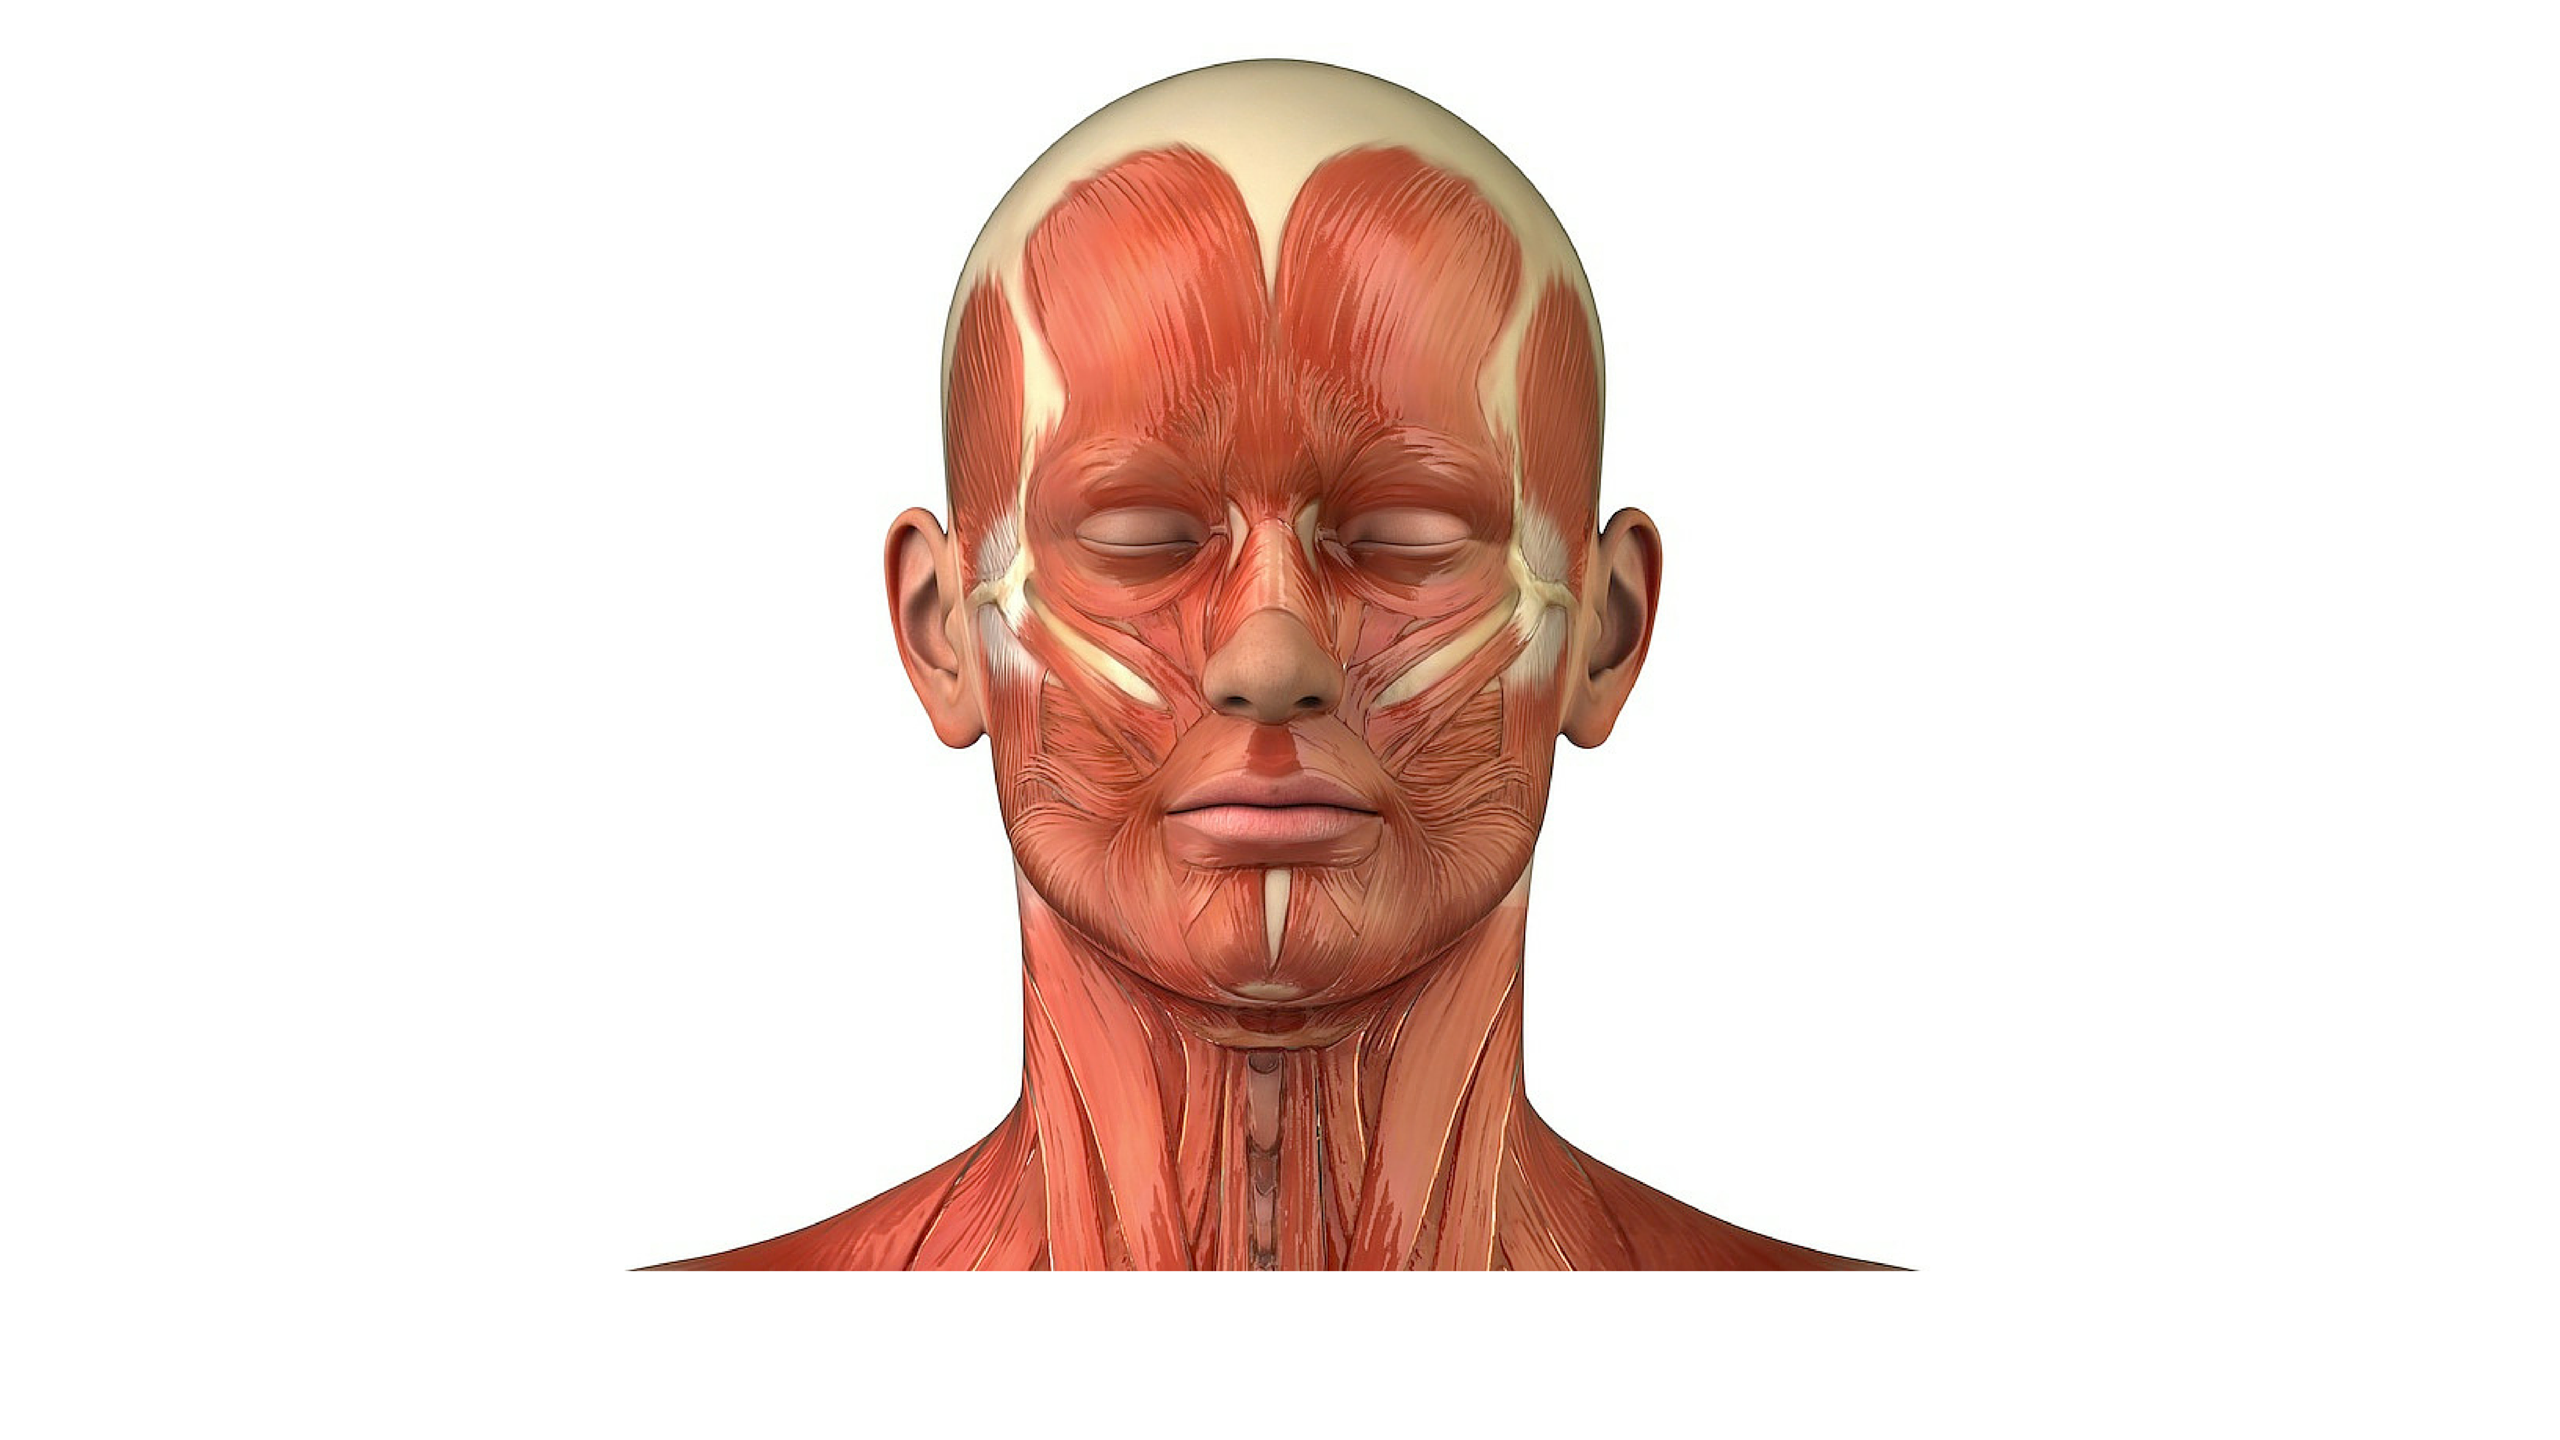 Косметология мышцы. Атлас мышц лица и шеи человека для косметолога. Мимические мышцы анатомия человека. Мышцы лица и шеи анатомия для косметологов. Мимические мышцы лица анатомия атлас.